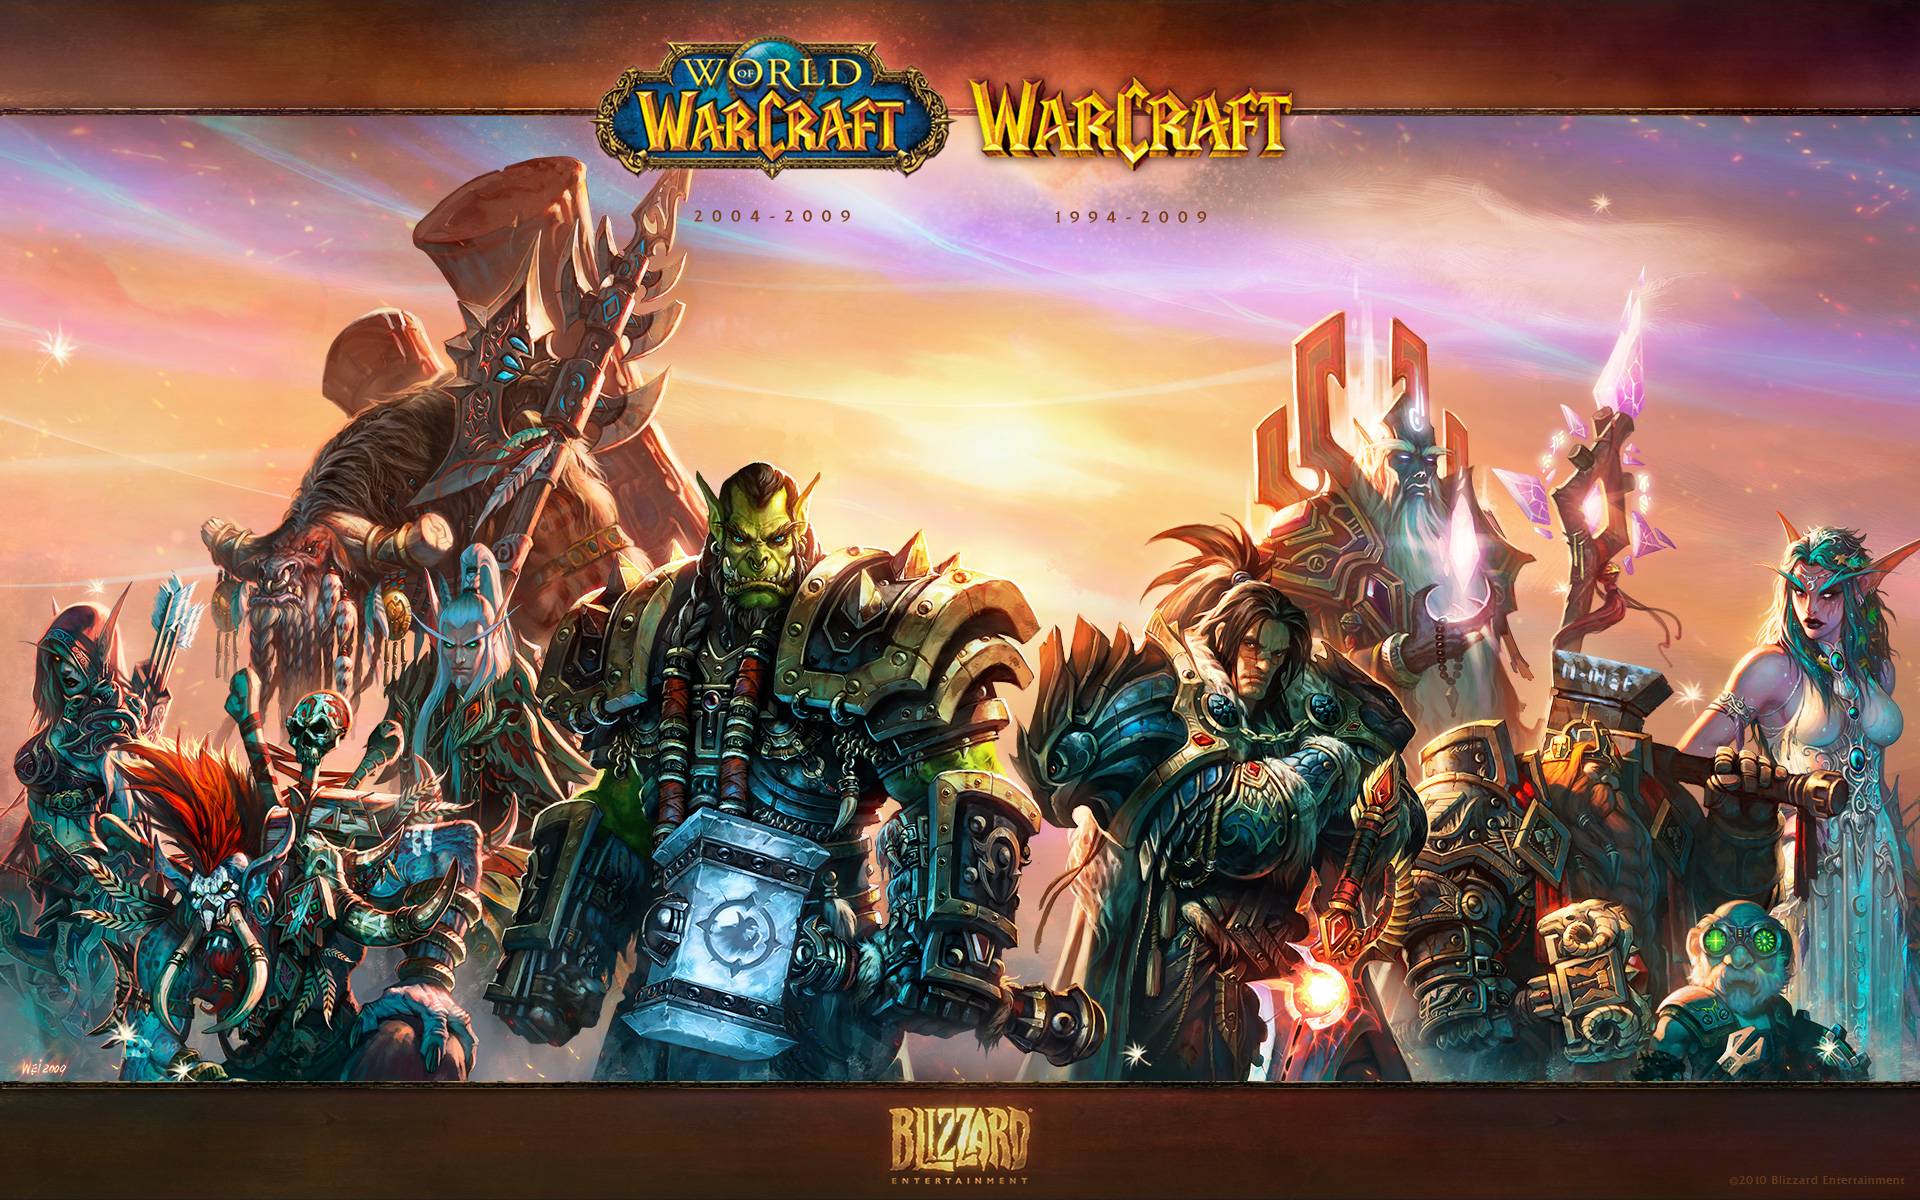 Cool World of Warcraft Wallpaper 08. hdwallpaper